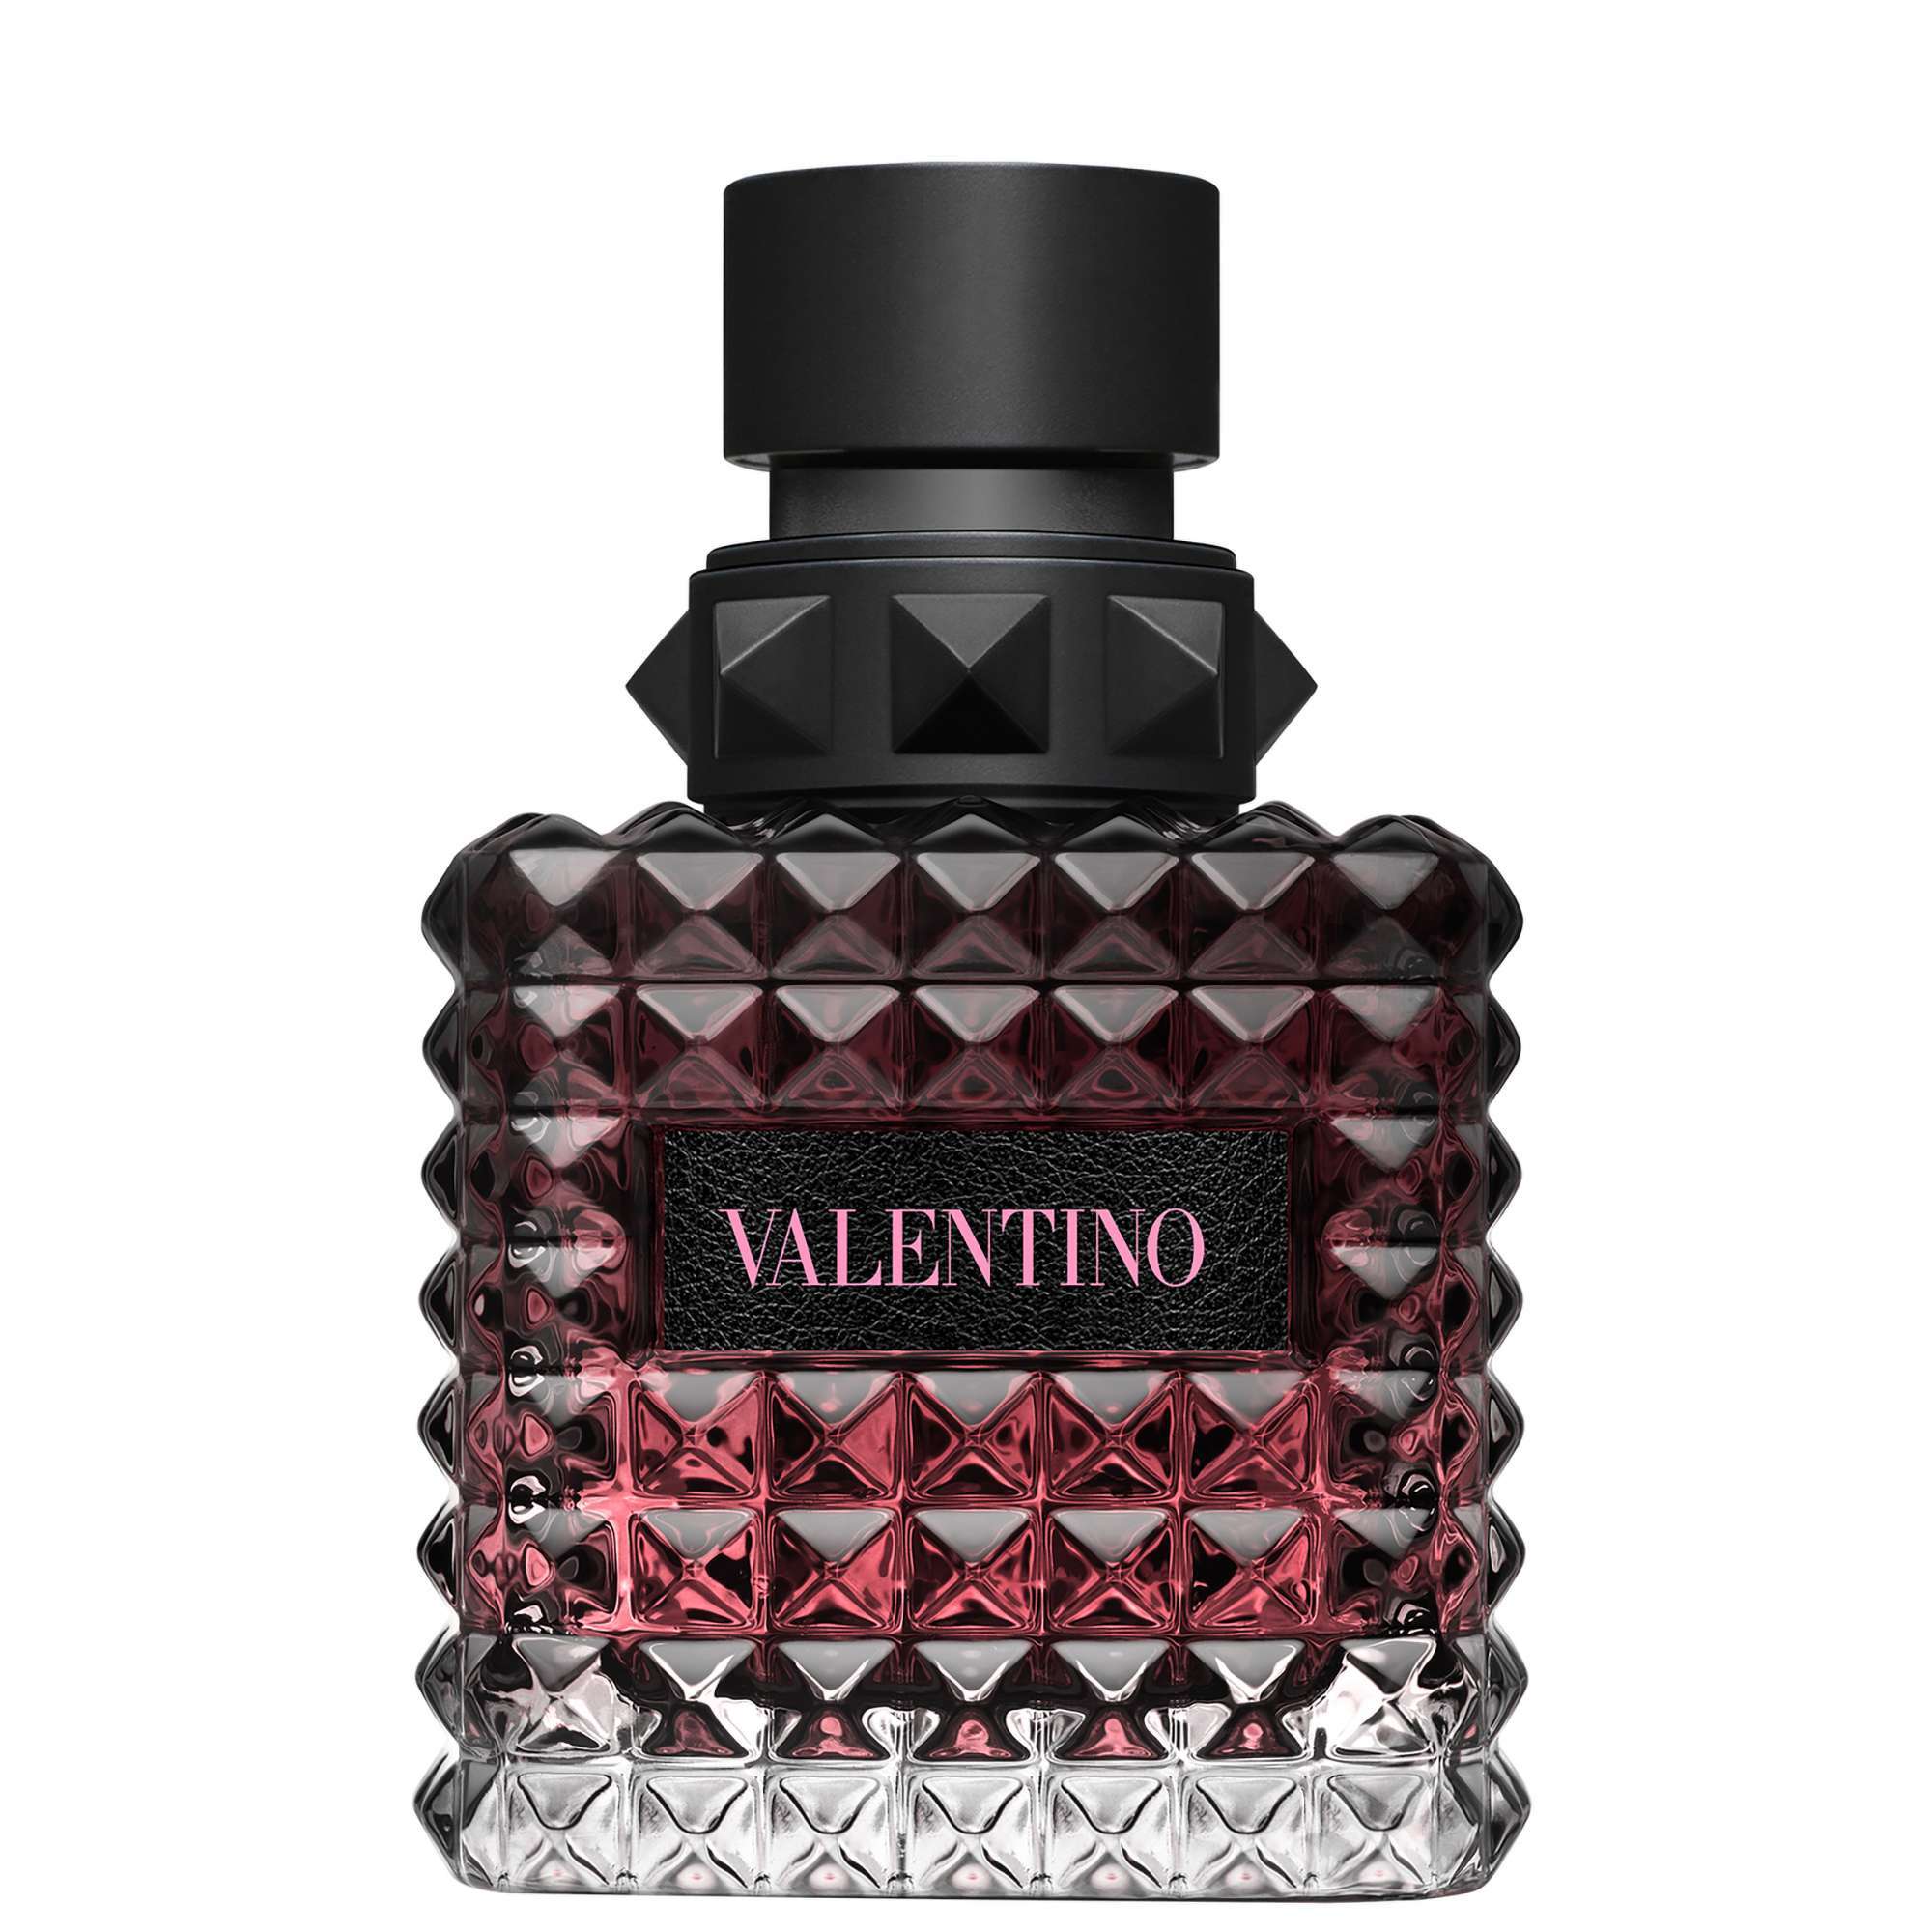 Photos - Women's Fragrance Valentino Born In Roma Donna Intense Eau de Parfum Intense Spray 50ml 